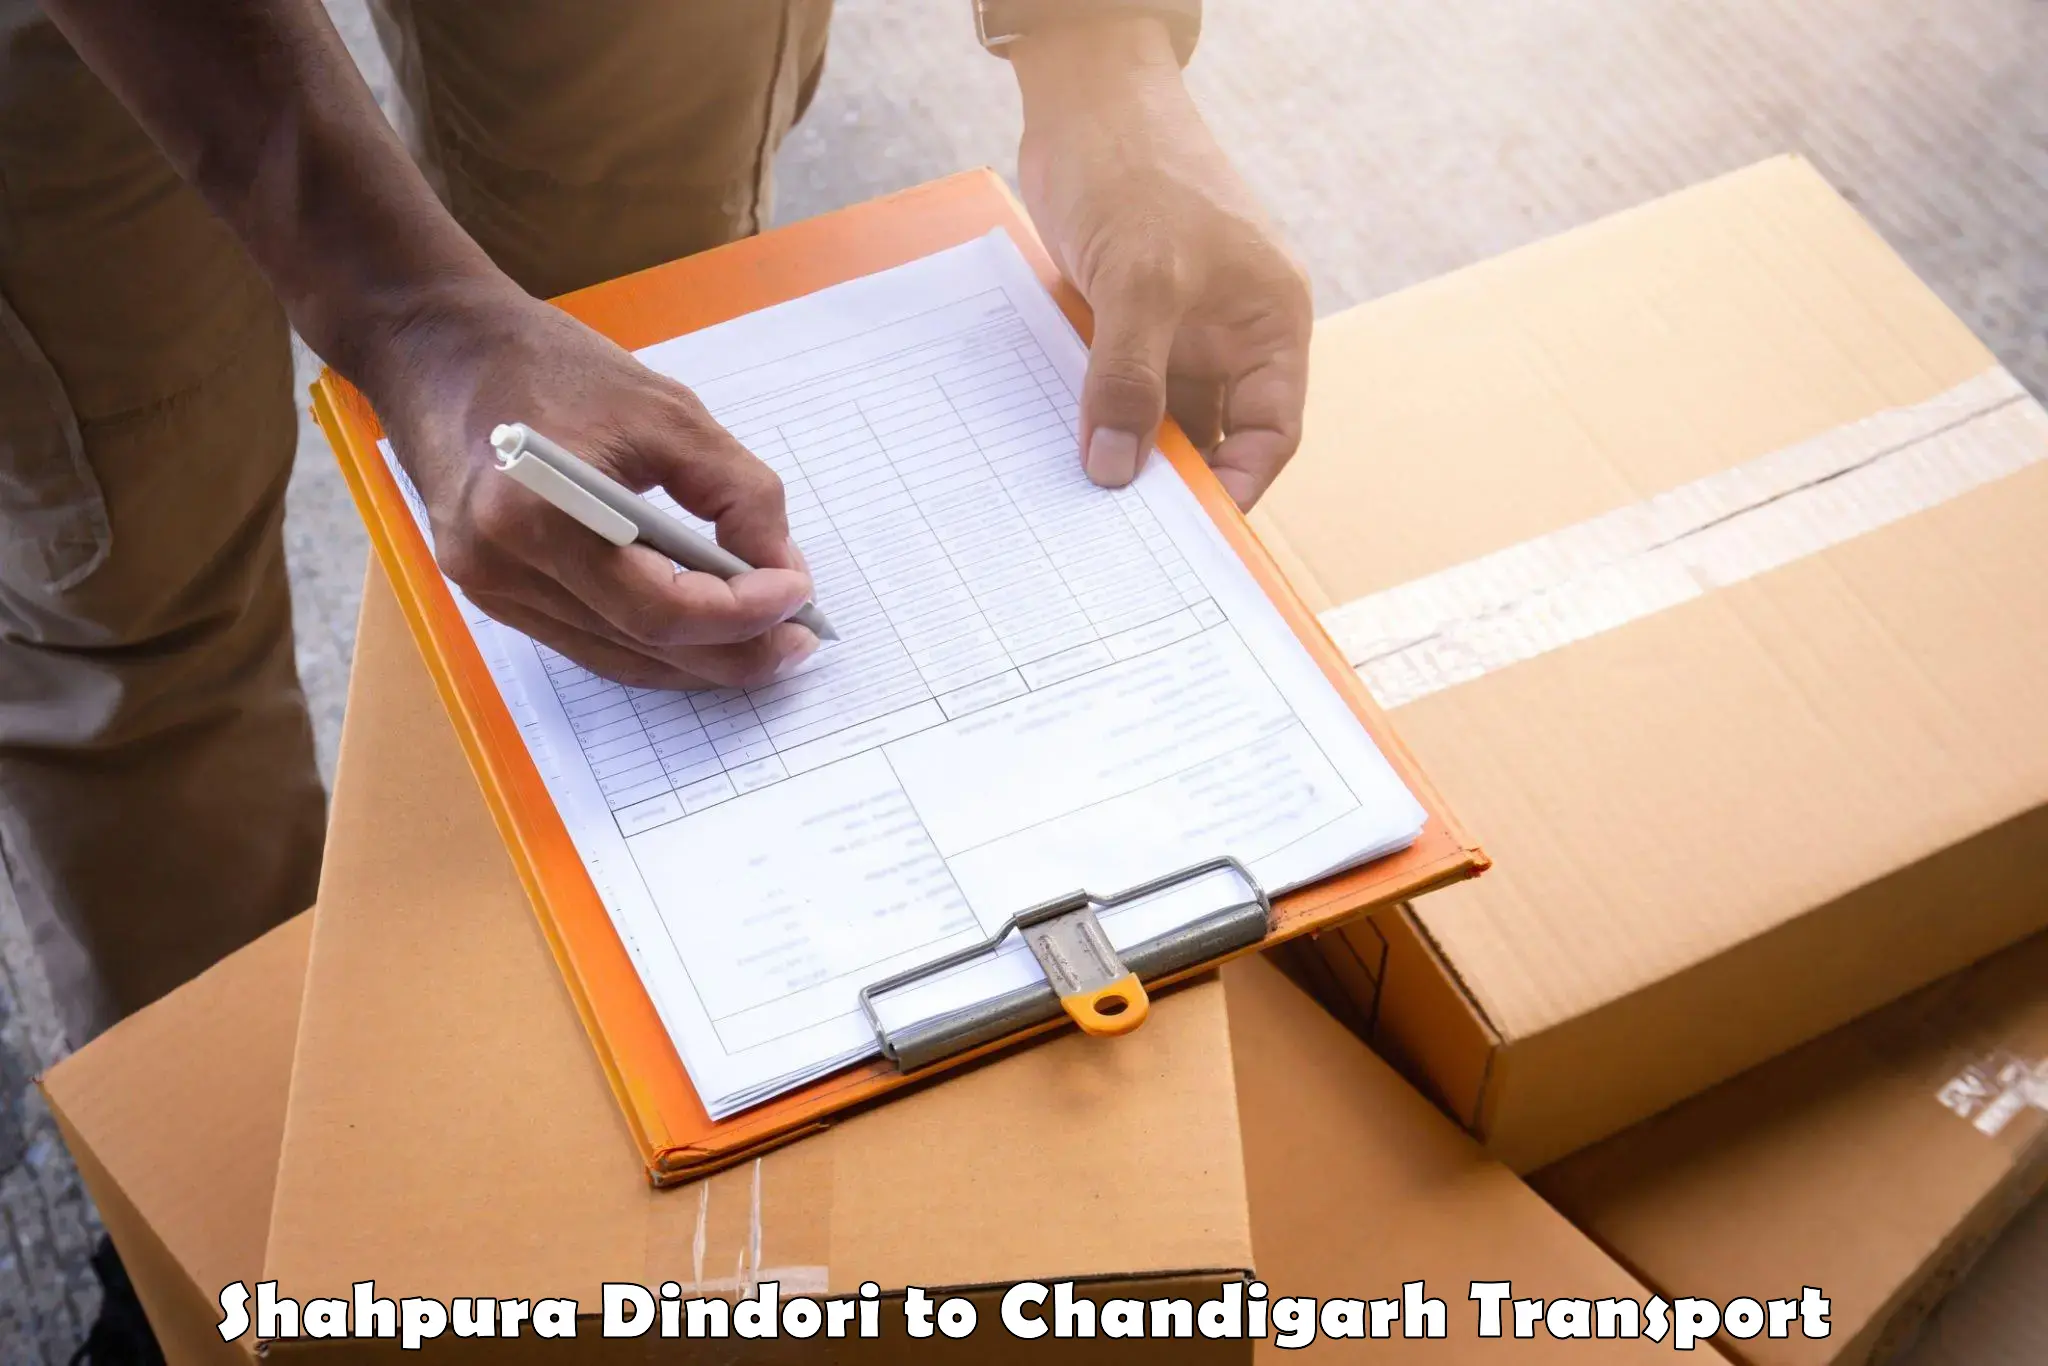 Truck transport companies in India Shahpura Dindori to Chandigarh